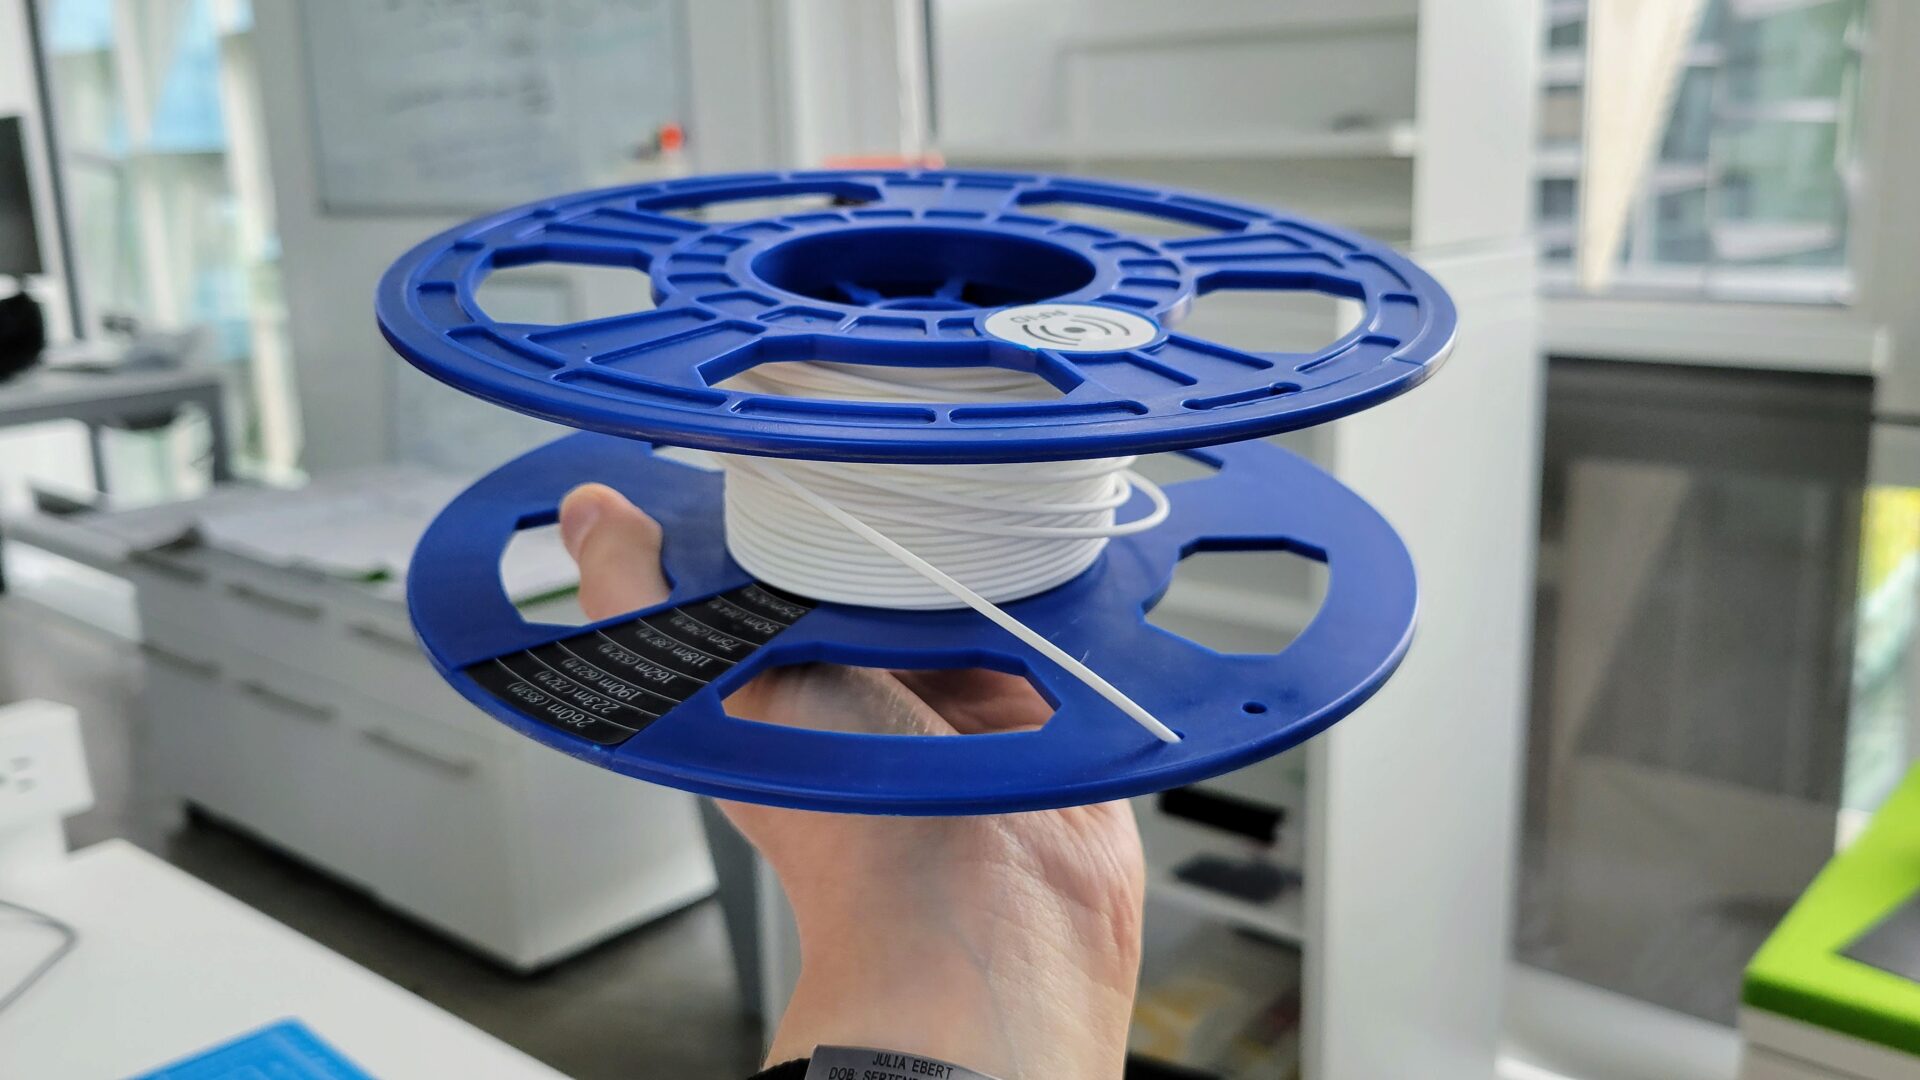 CAlmost empty filament spool